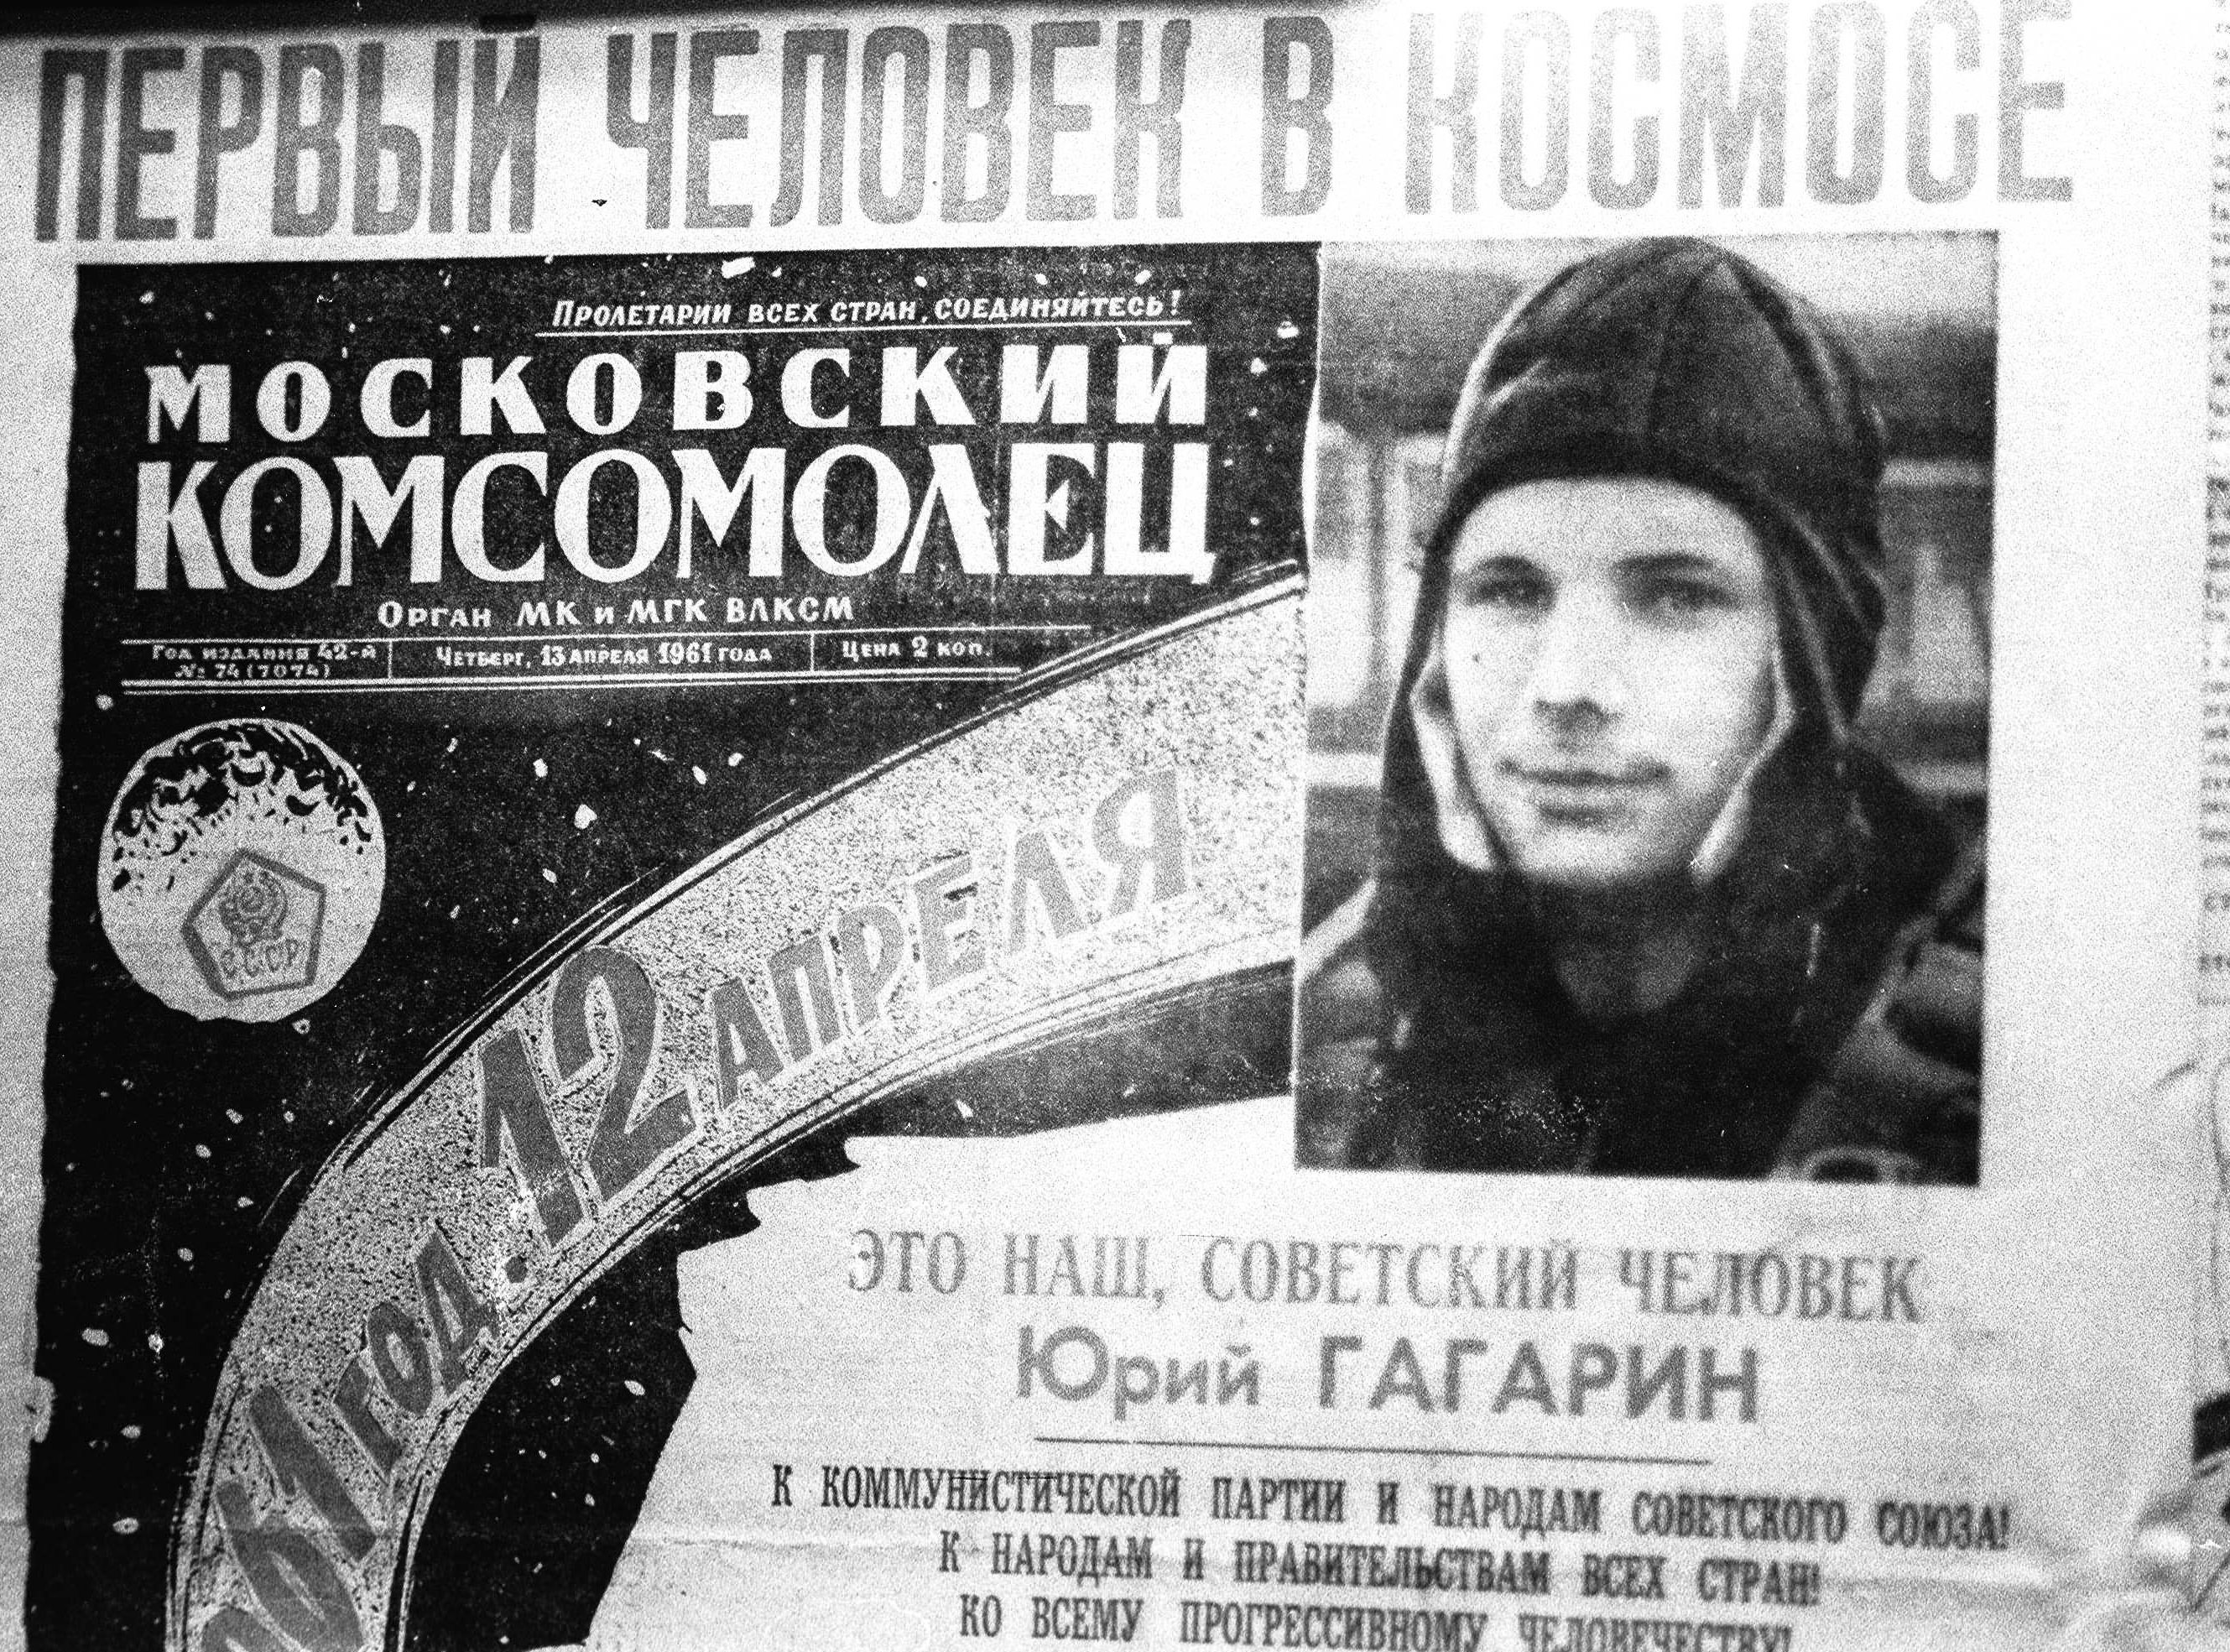 Un manifesto commemorativo del volo del 12 aprile 1961, conservato al museo di Mosca dedicato al cosmonauta